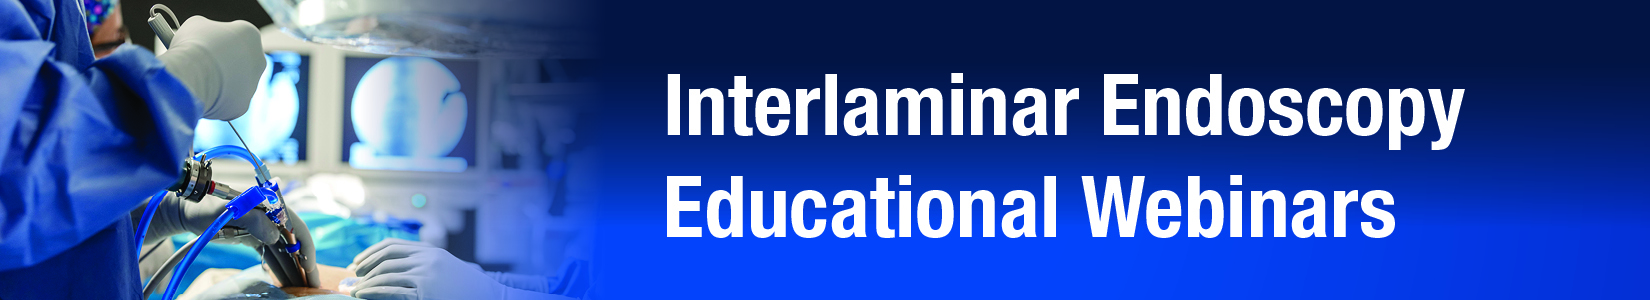 Interlaminar educational Webinars